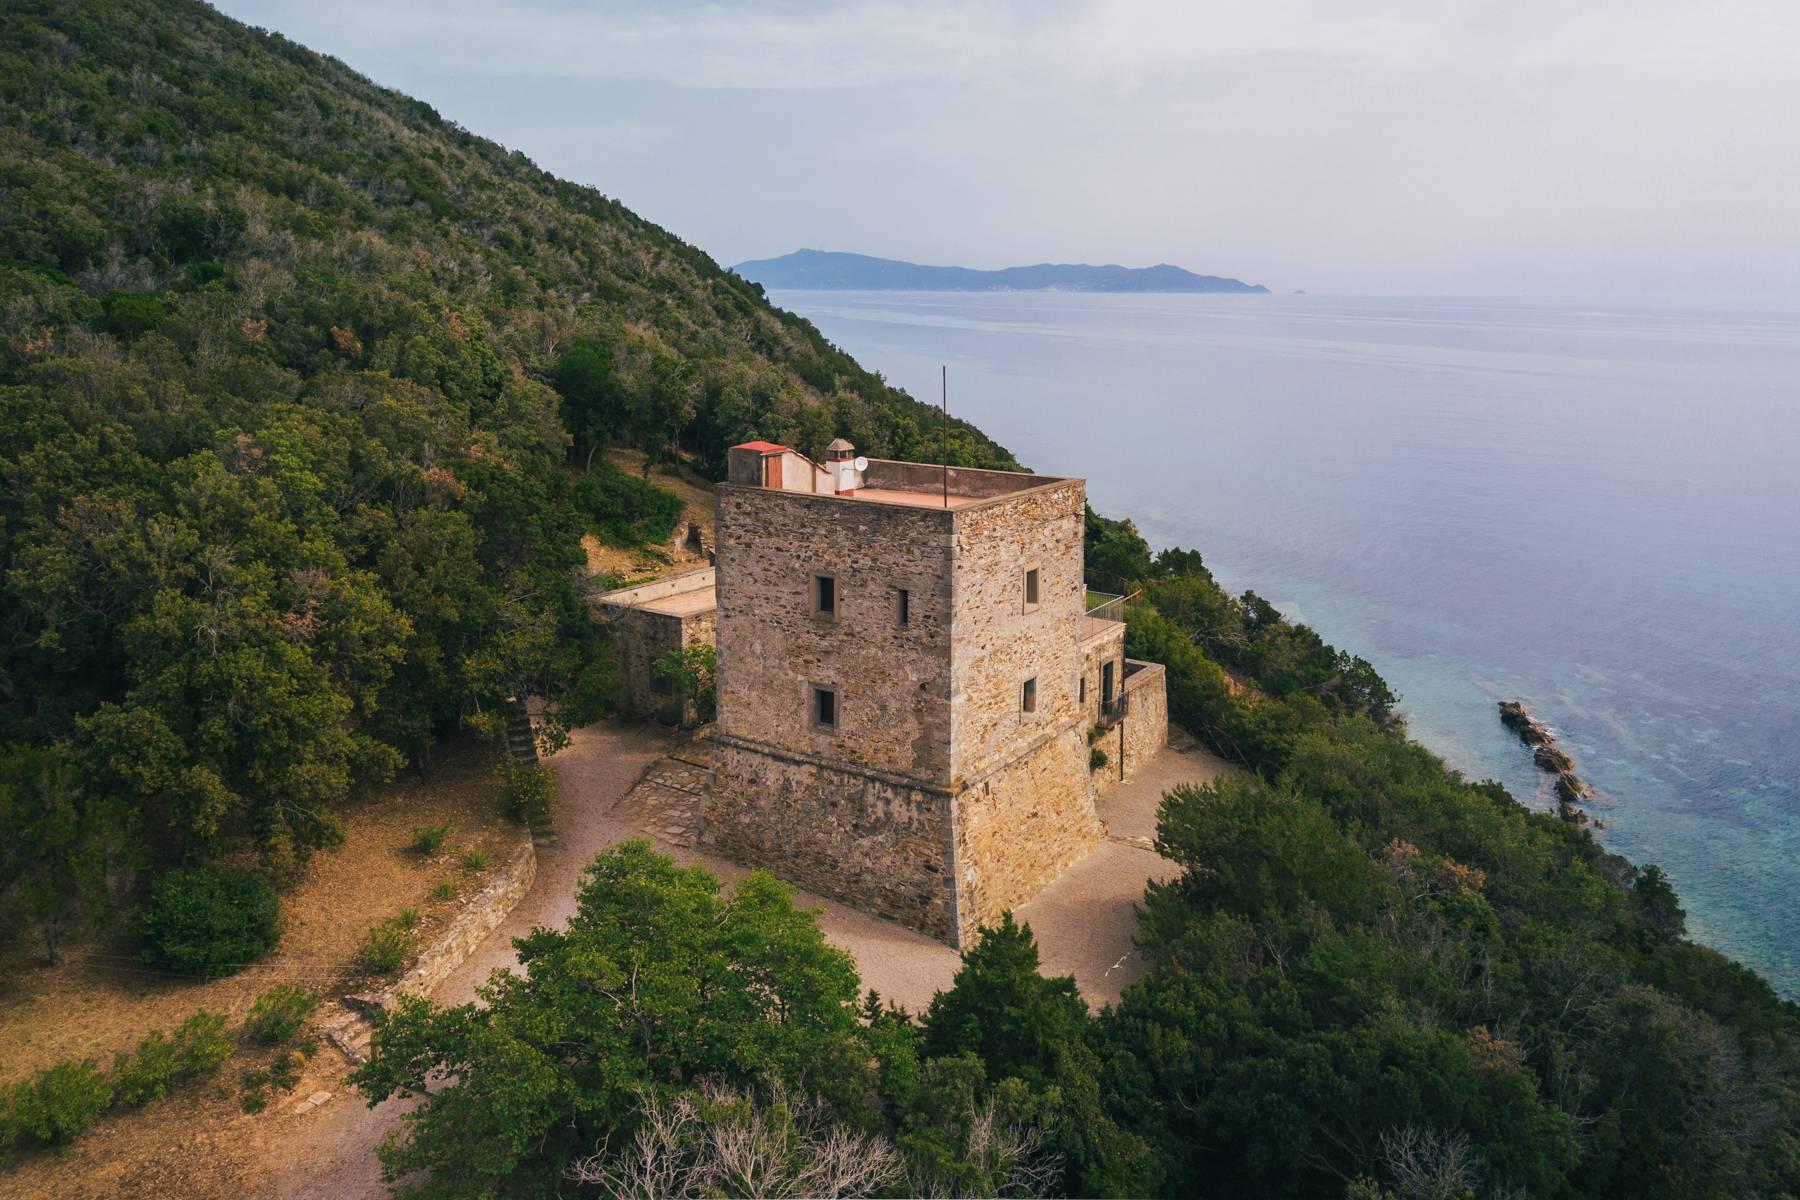 Antica torre di avvistamento del XV secolo a picco sul mare - 21